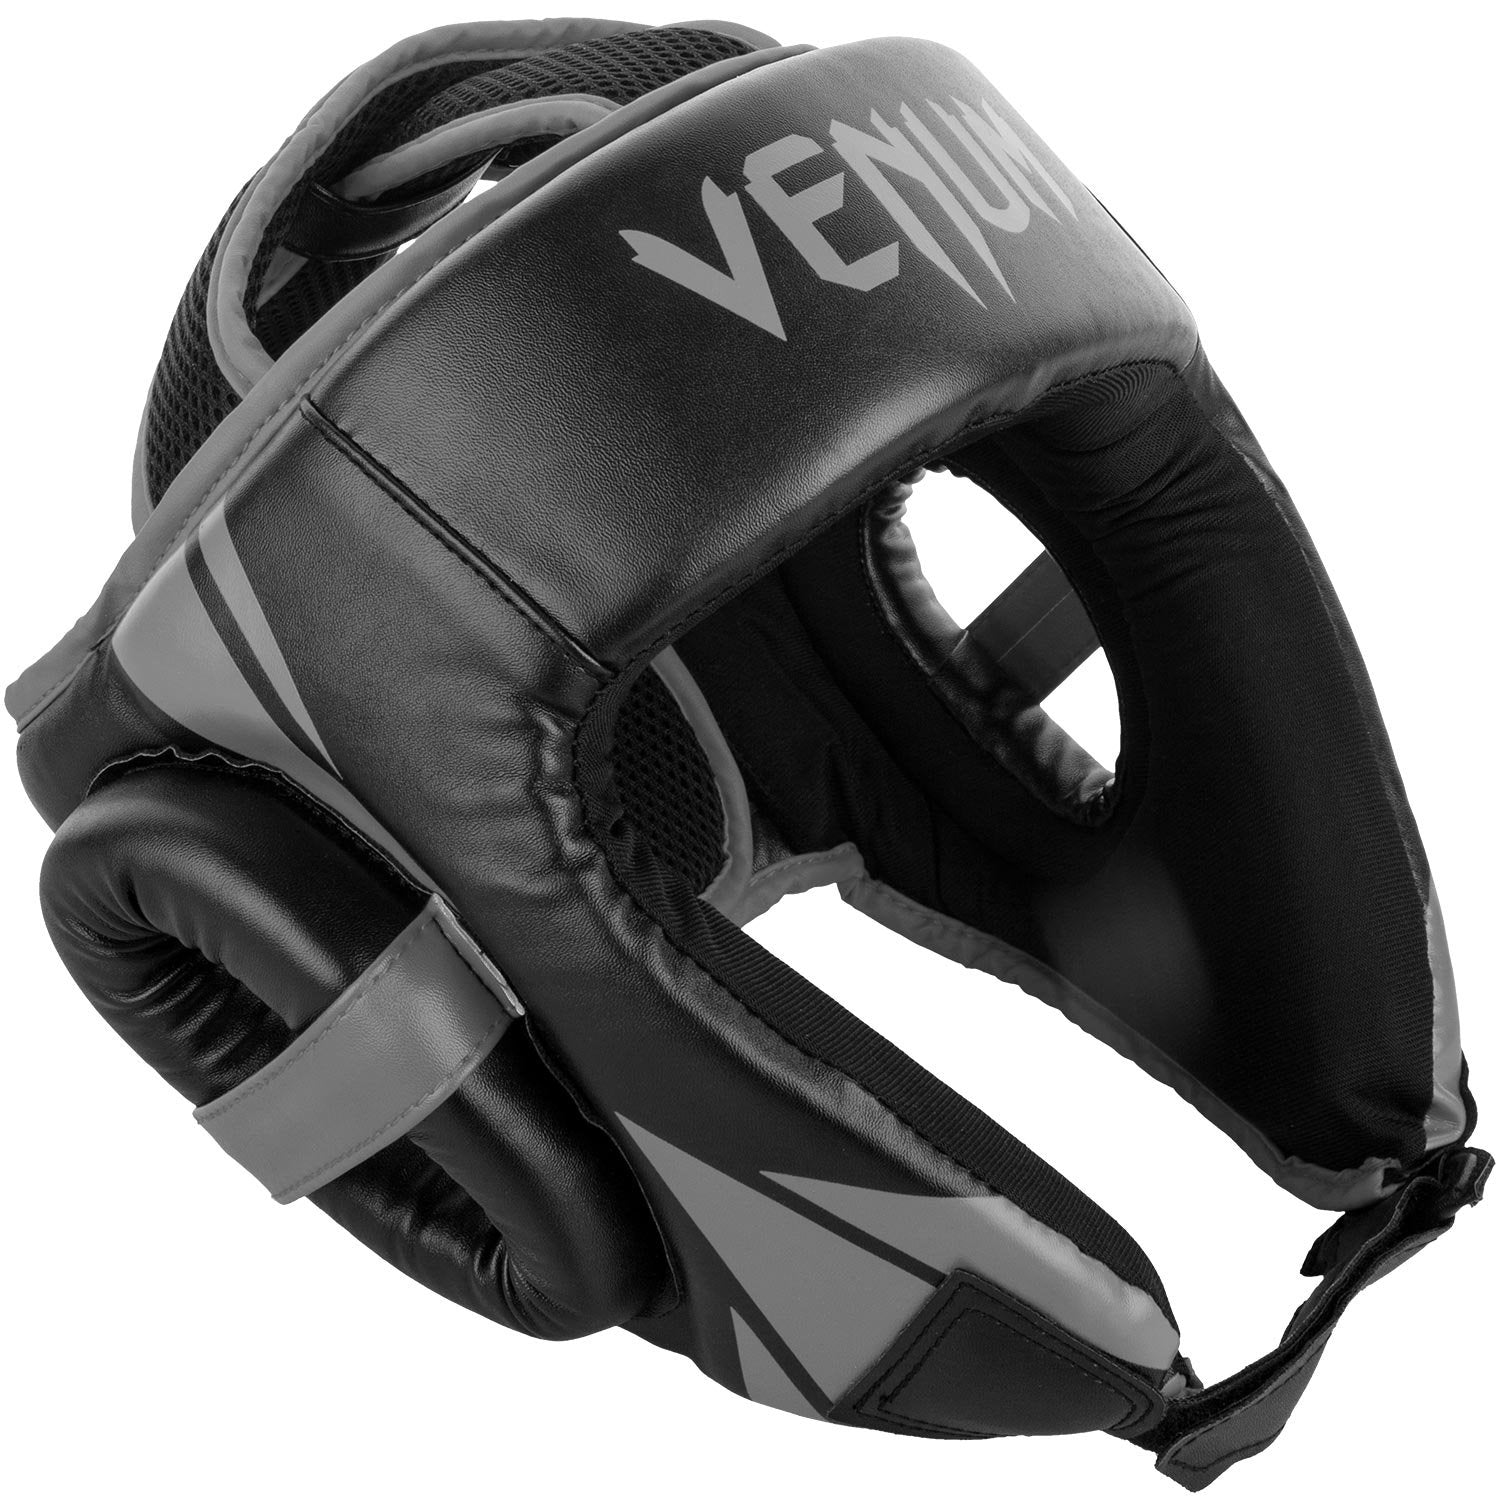 Venum Challenger Open Face Headgear - Best Price online Prokicksports.com